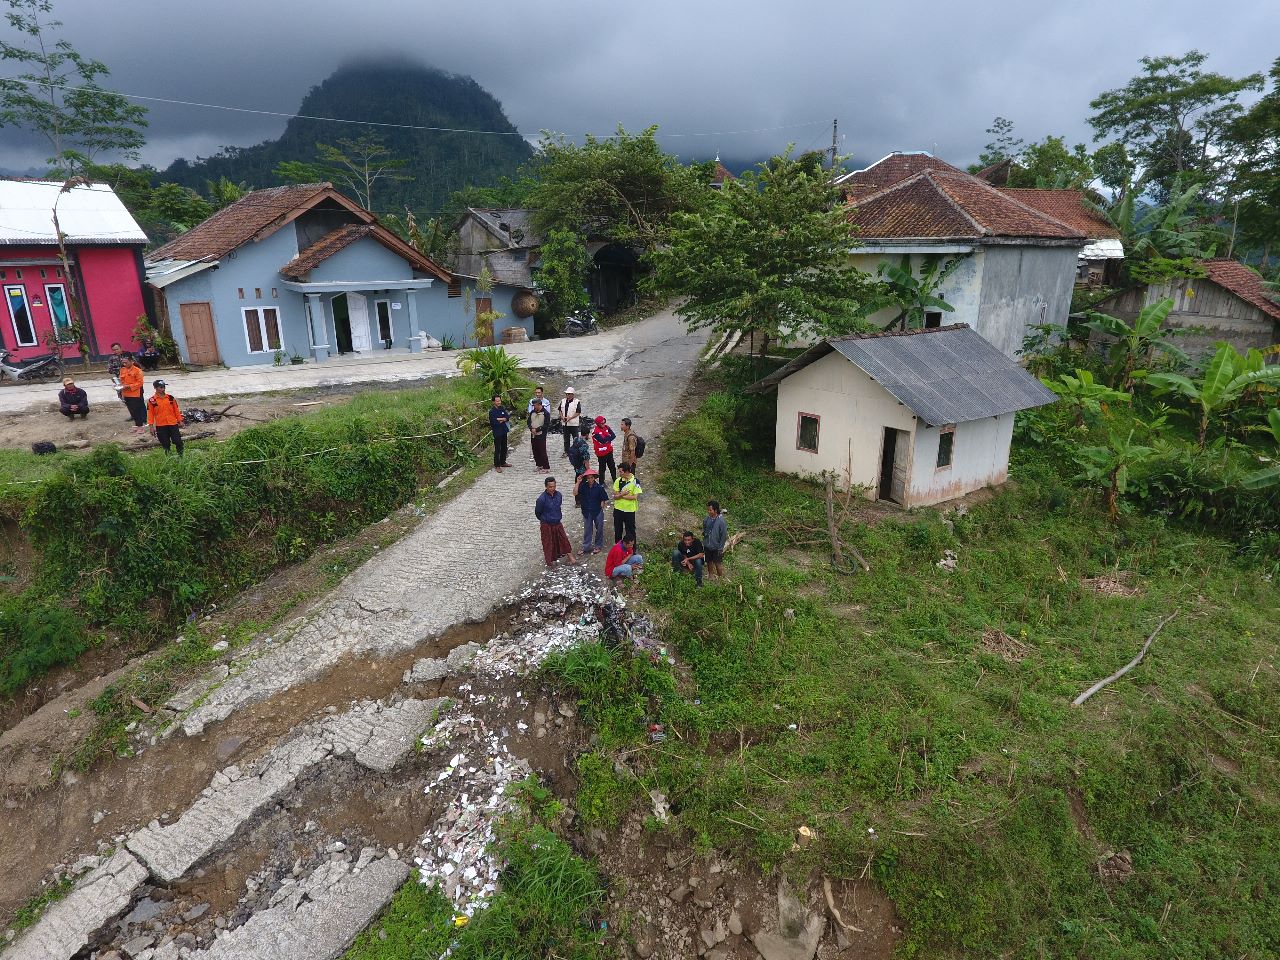 Bencana Tanah Bergerak di Banjarnegara Meluas, Tiga Dusun Terisolir